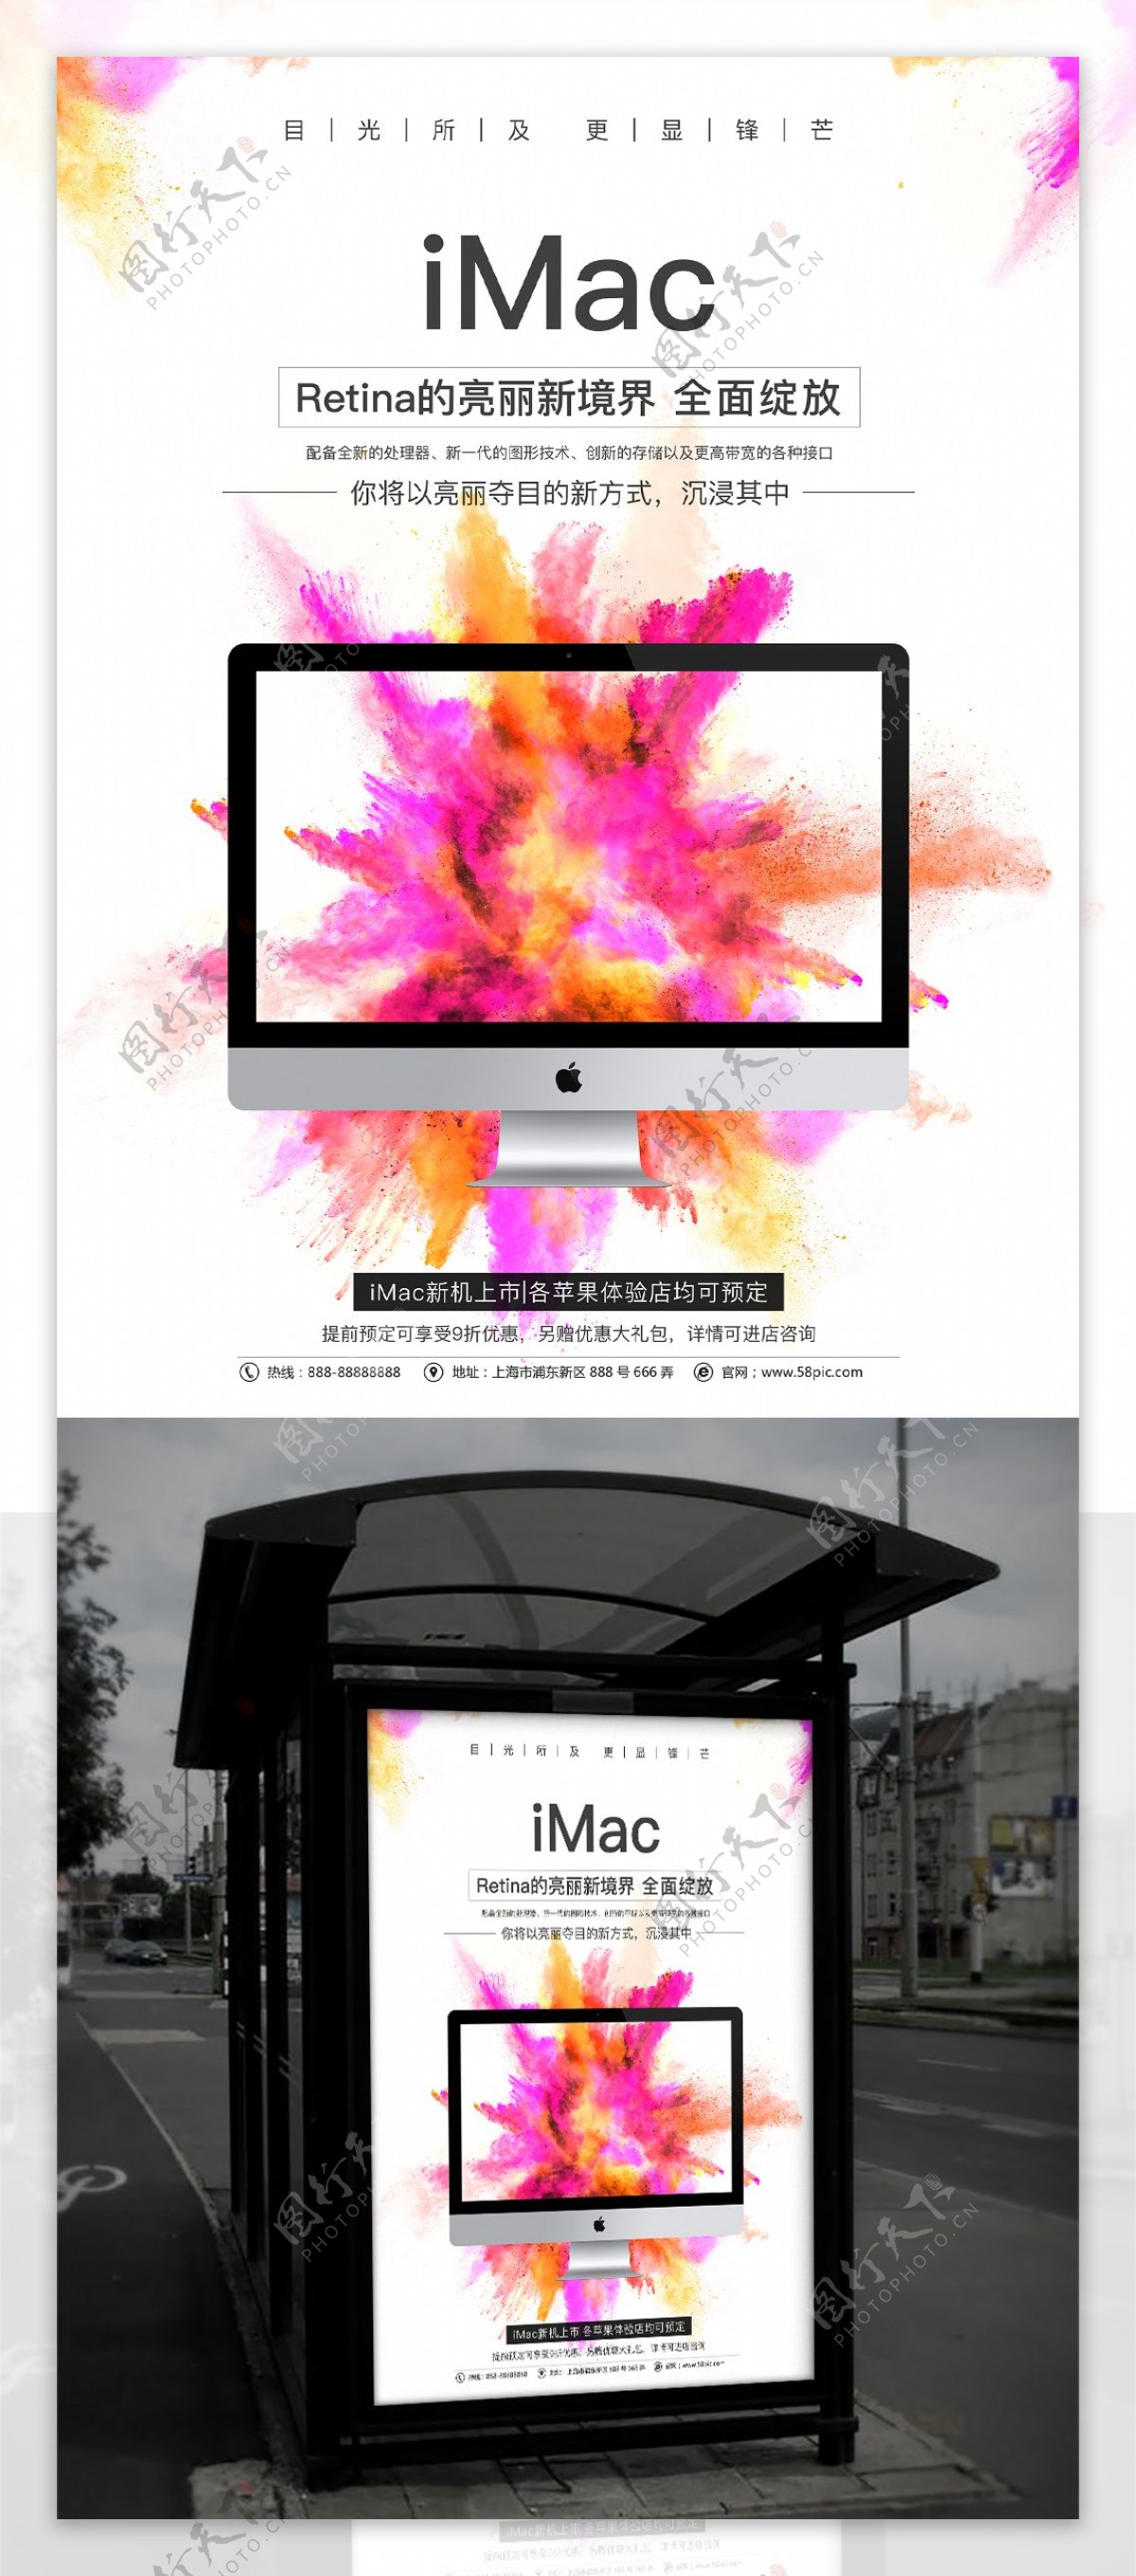 白色炫彩苹果产品手机店iMac促销海报